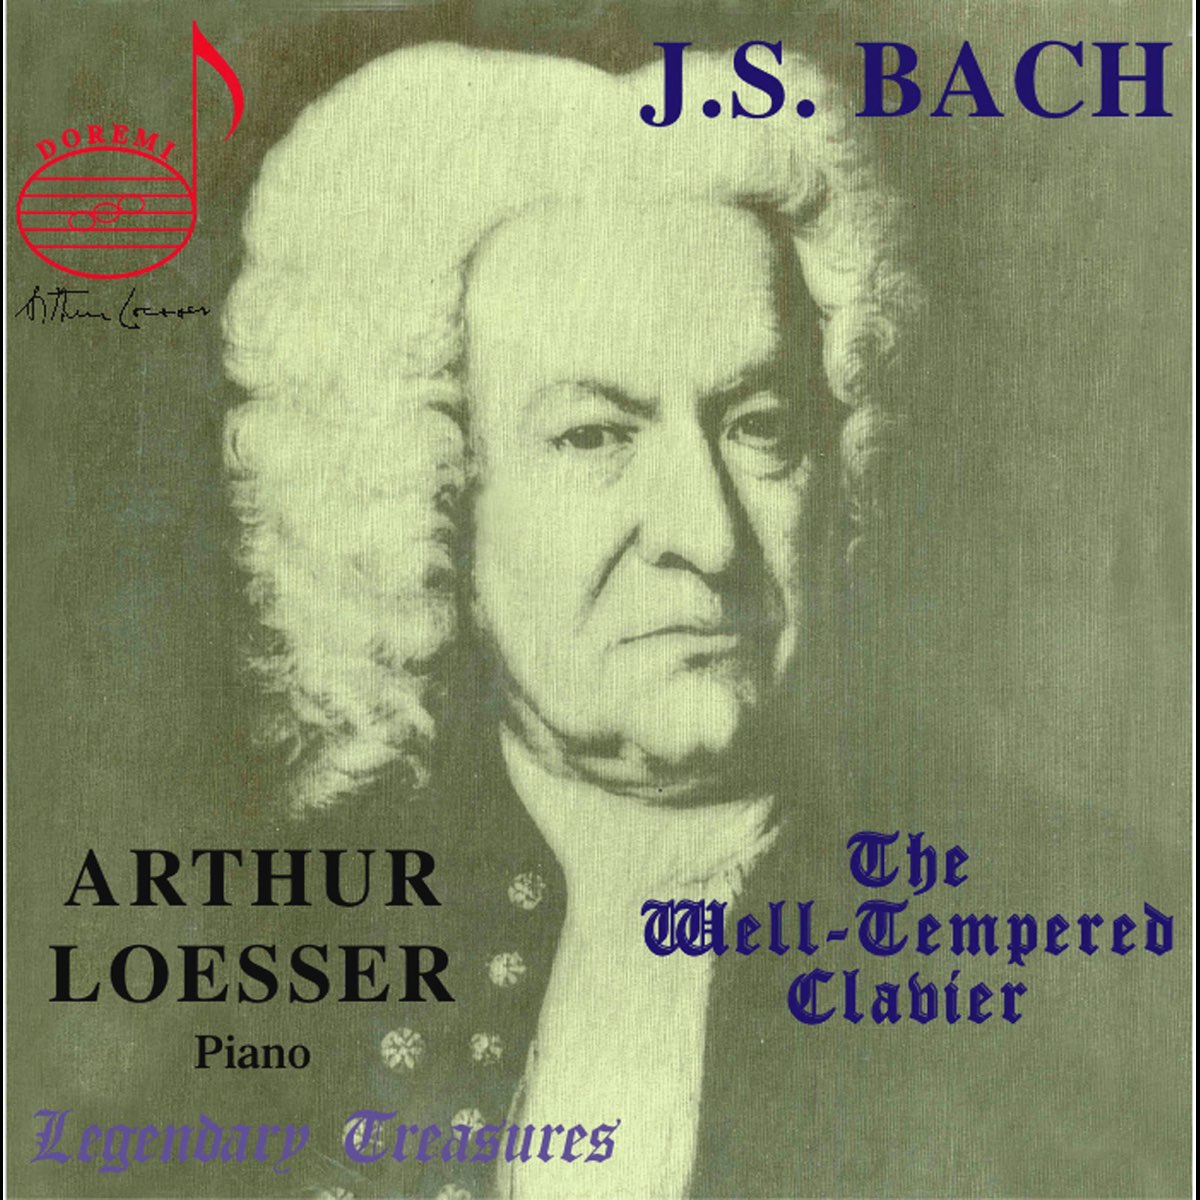 Люблю слушать баха. Альбомы Бах. Хорошо темперированный клавир Иоганн Себастьян Бах. Bach the well Tempered Clavier.